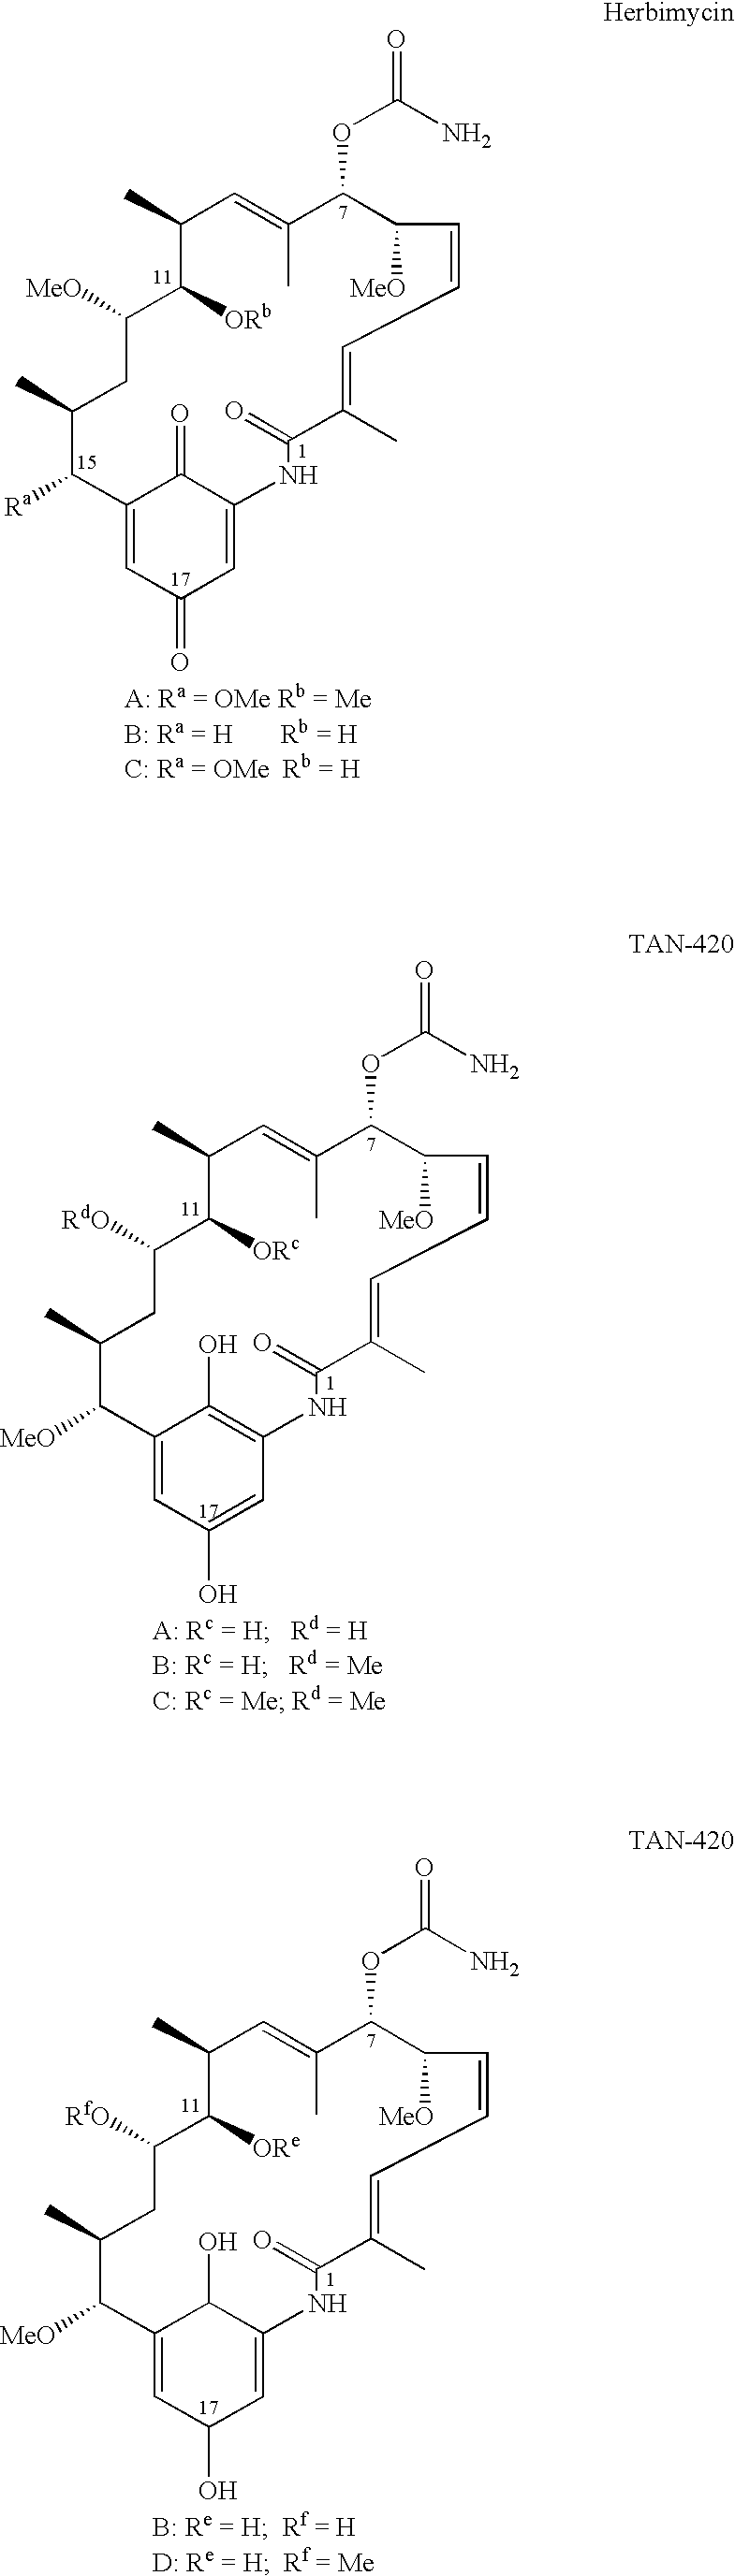 2-Desmethyl ansamycin compounds